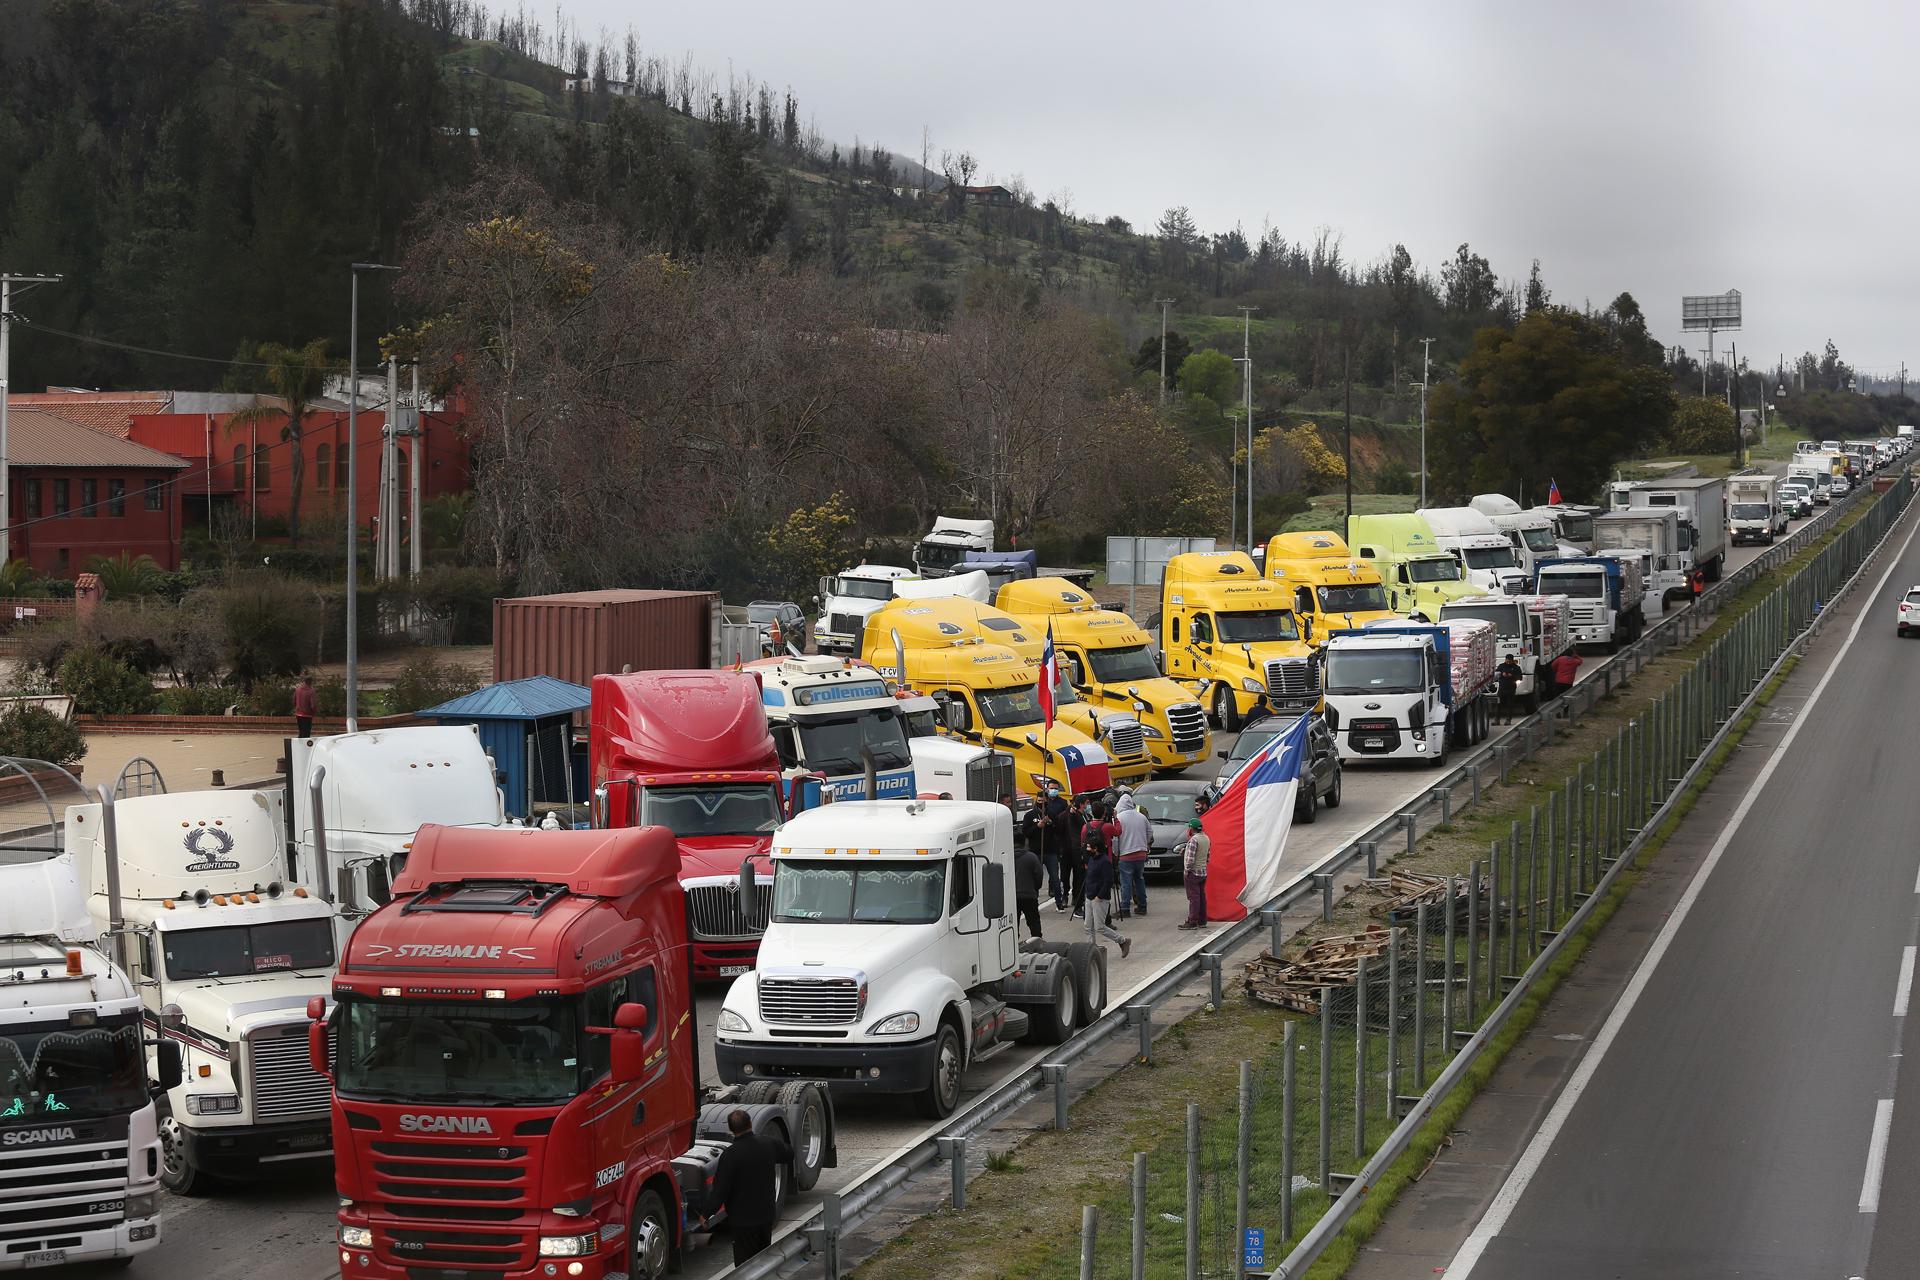 Vista de camiones detenidos en una vía chilena como parte de un paro, en una fotografía de archivo. EFE/Elvis González